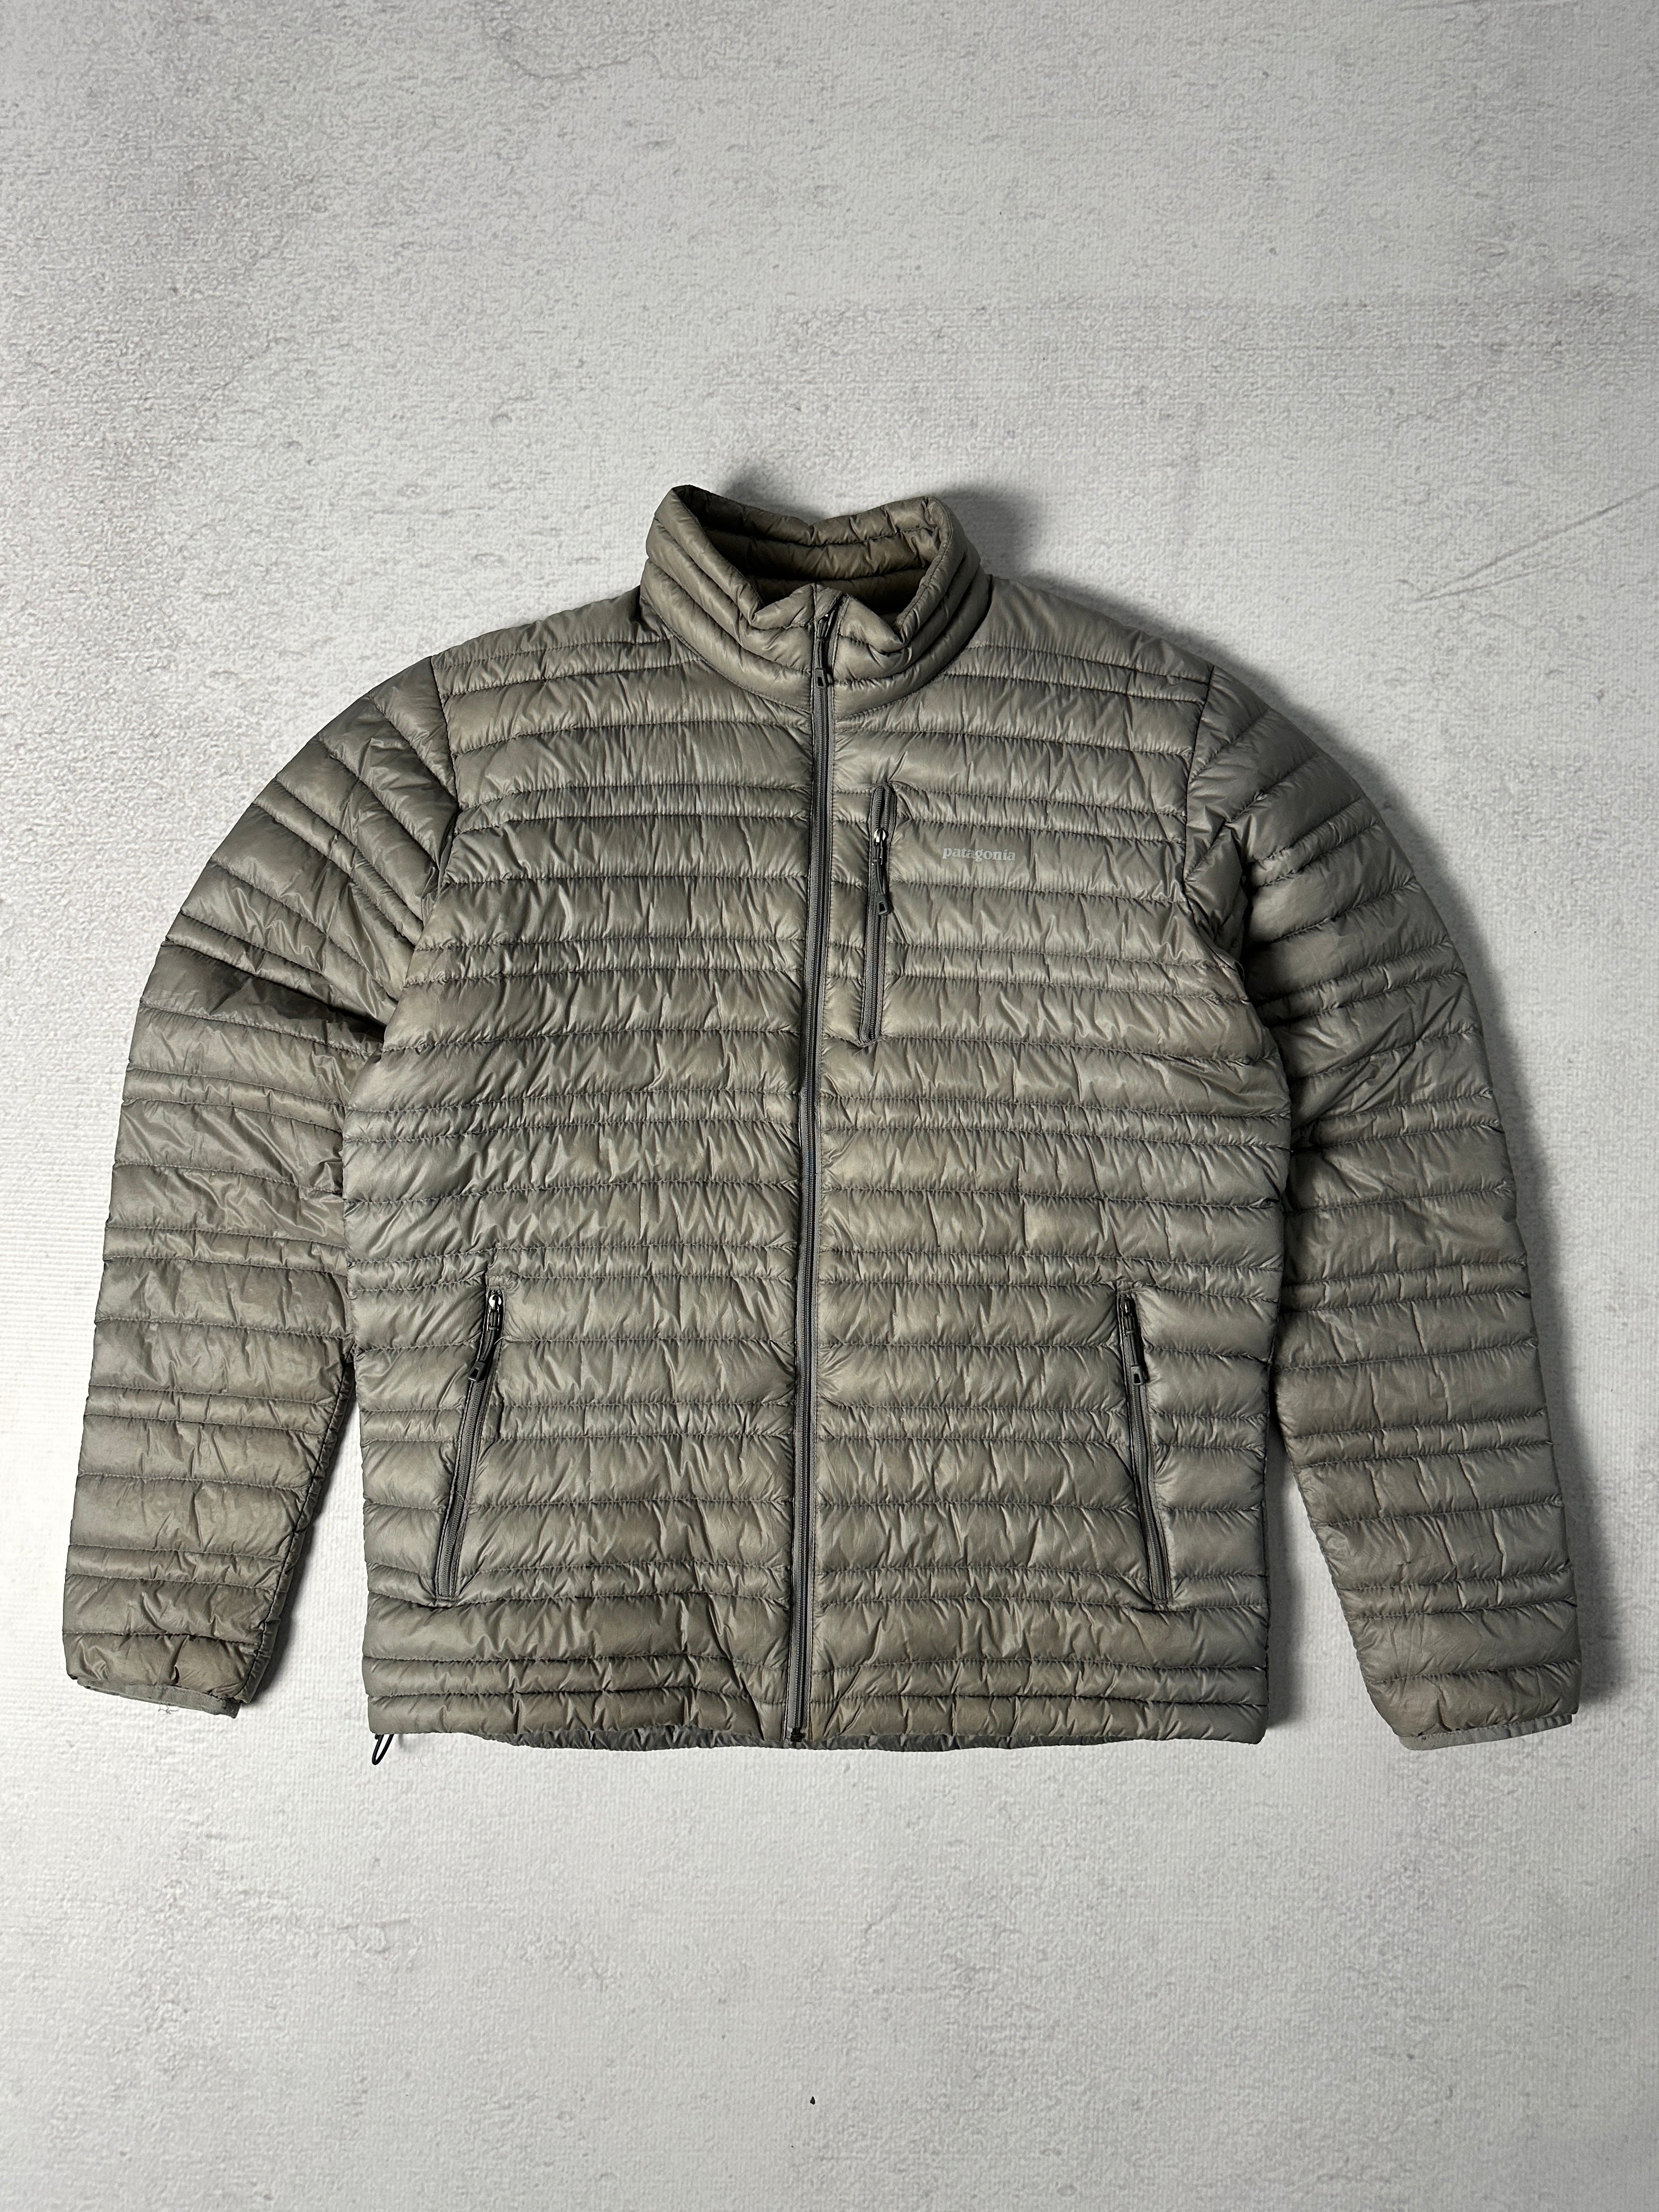 Vintage Patagonia Puffer Jacket - Men's Medium